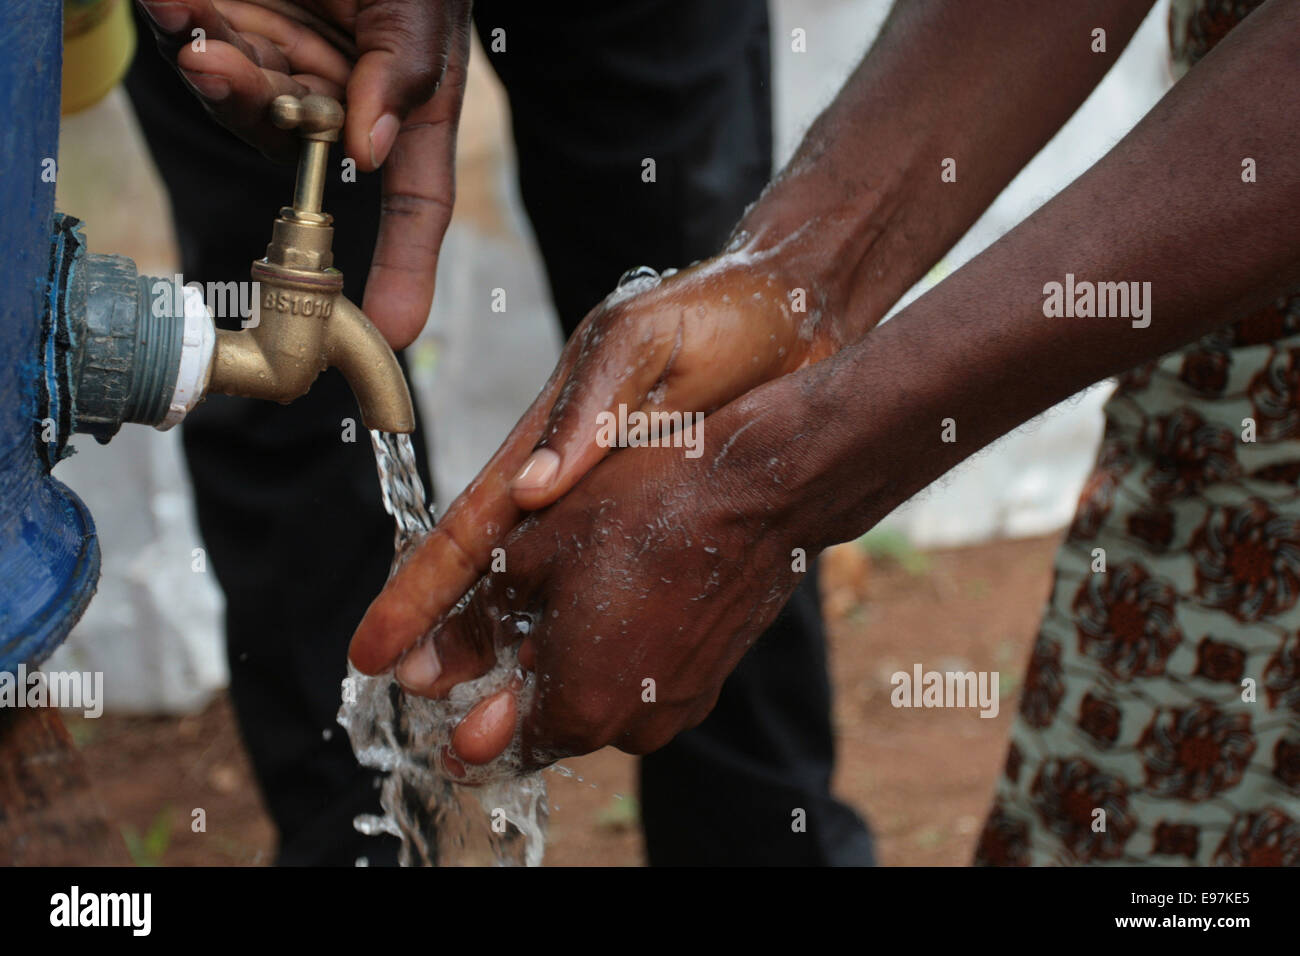 Lavage à la main à un robinet dans le cadre de la mesure de prévention du virus Ebola à Lagos au Nigéria. Banque D'Images